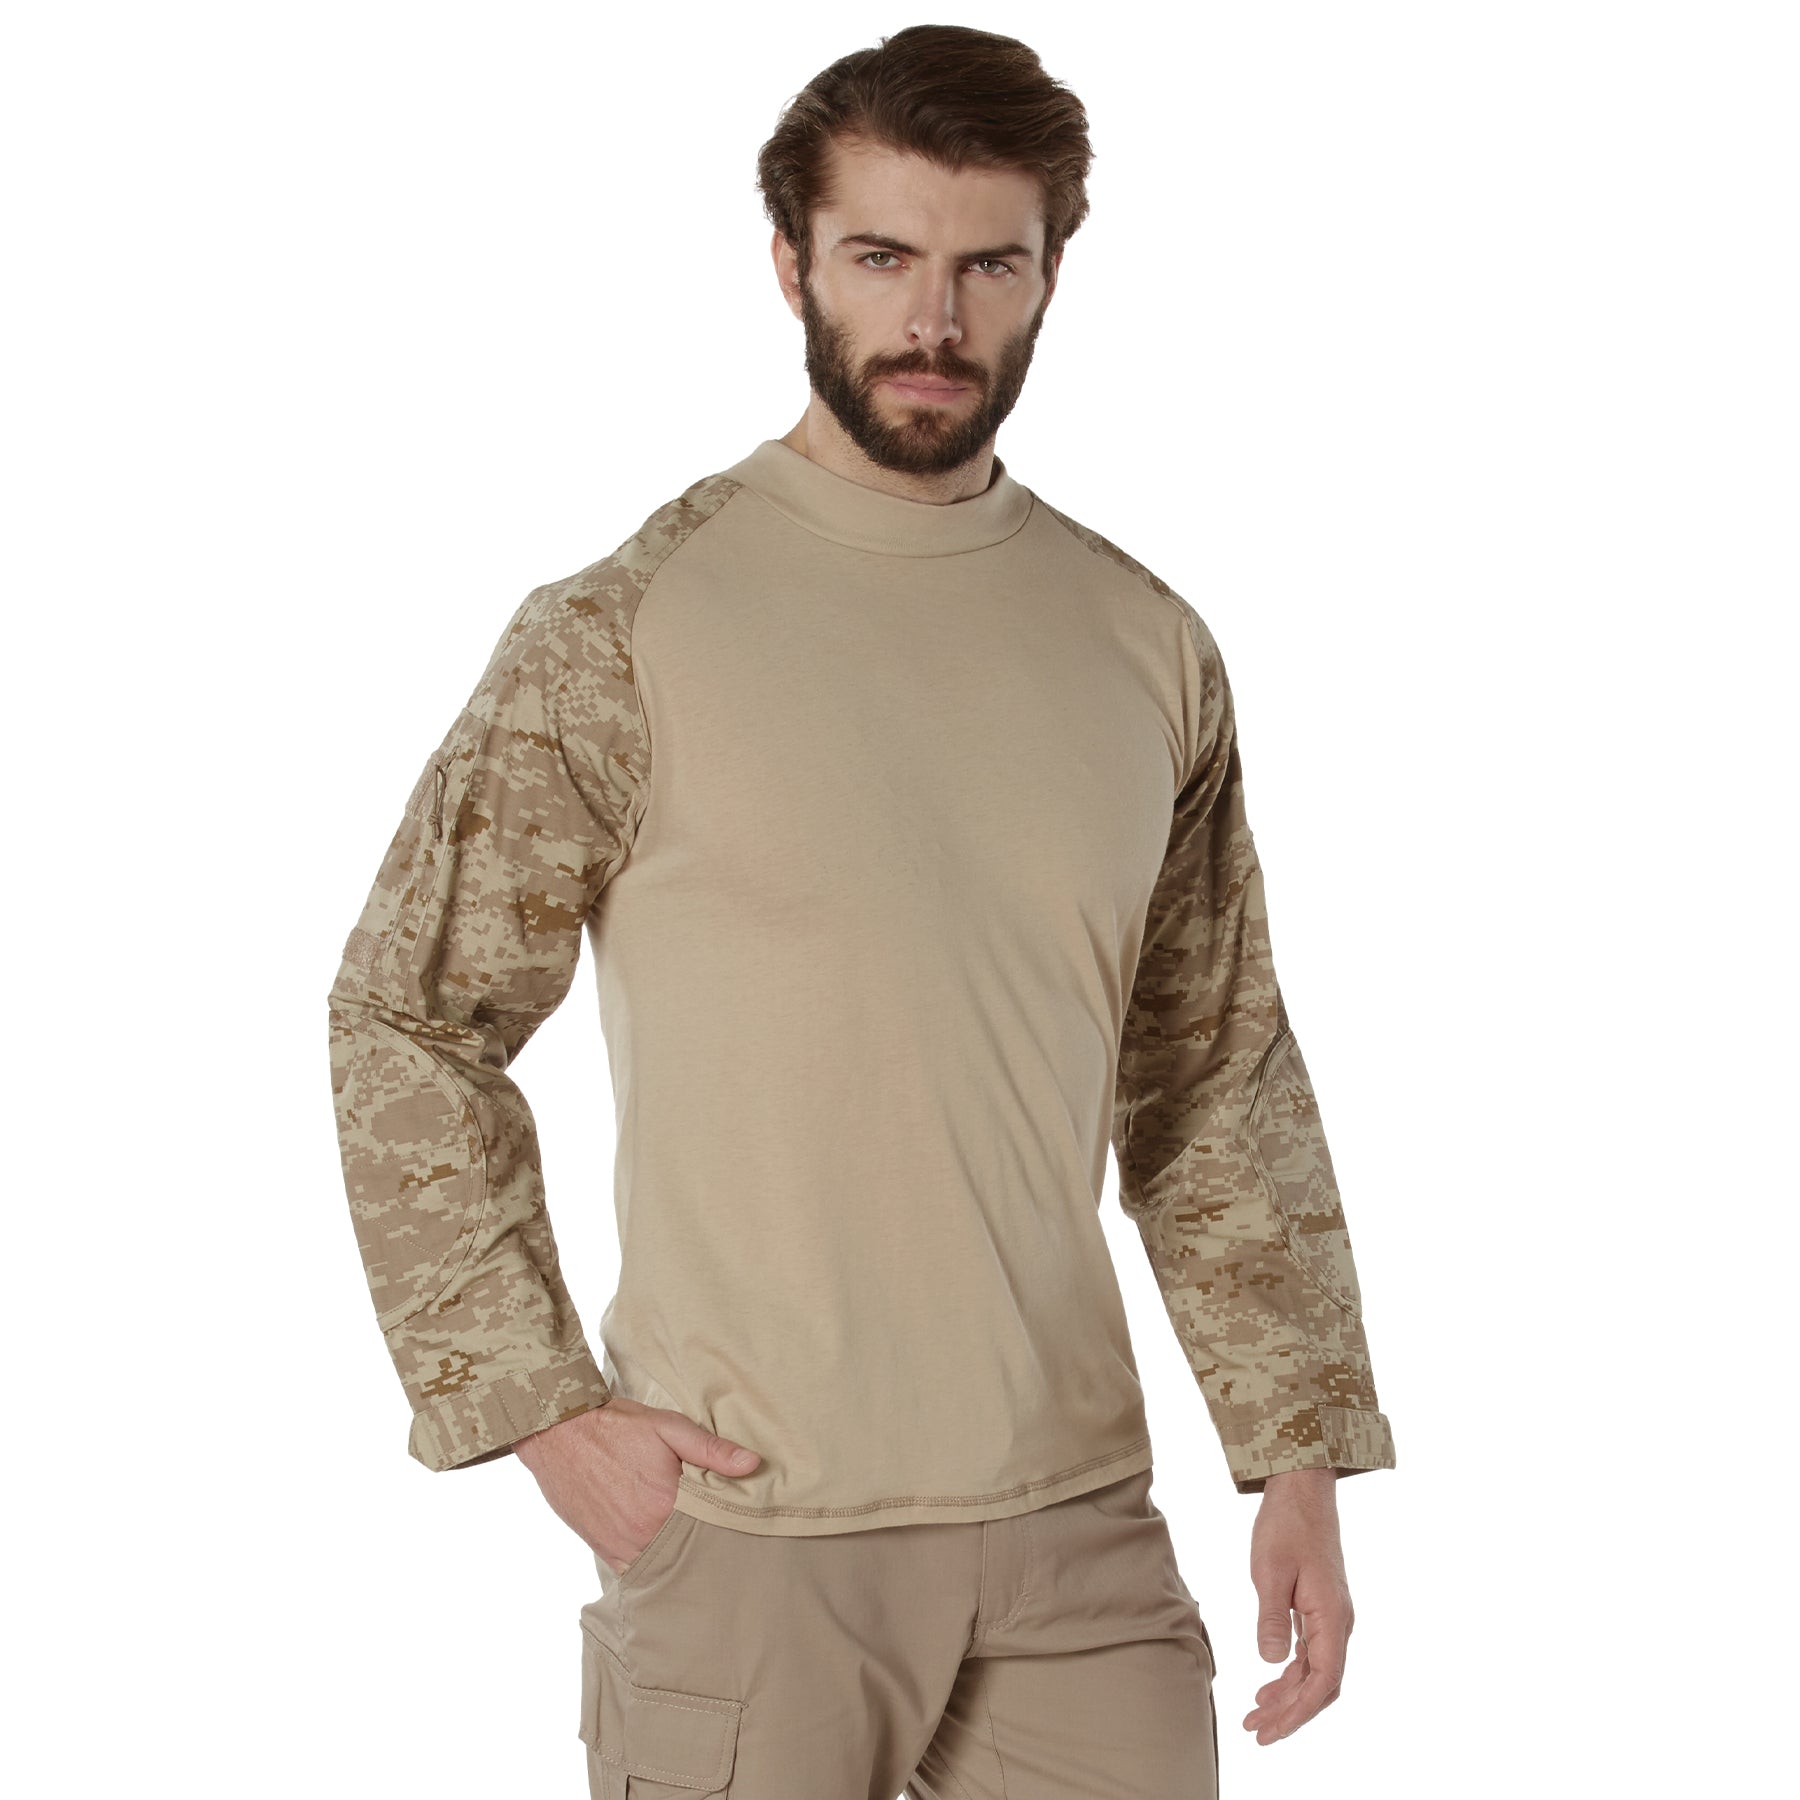 Digital Camo Poly/Cotton Tactical Combat Shirts